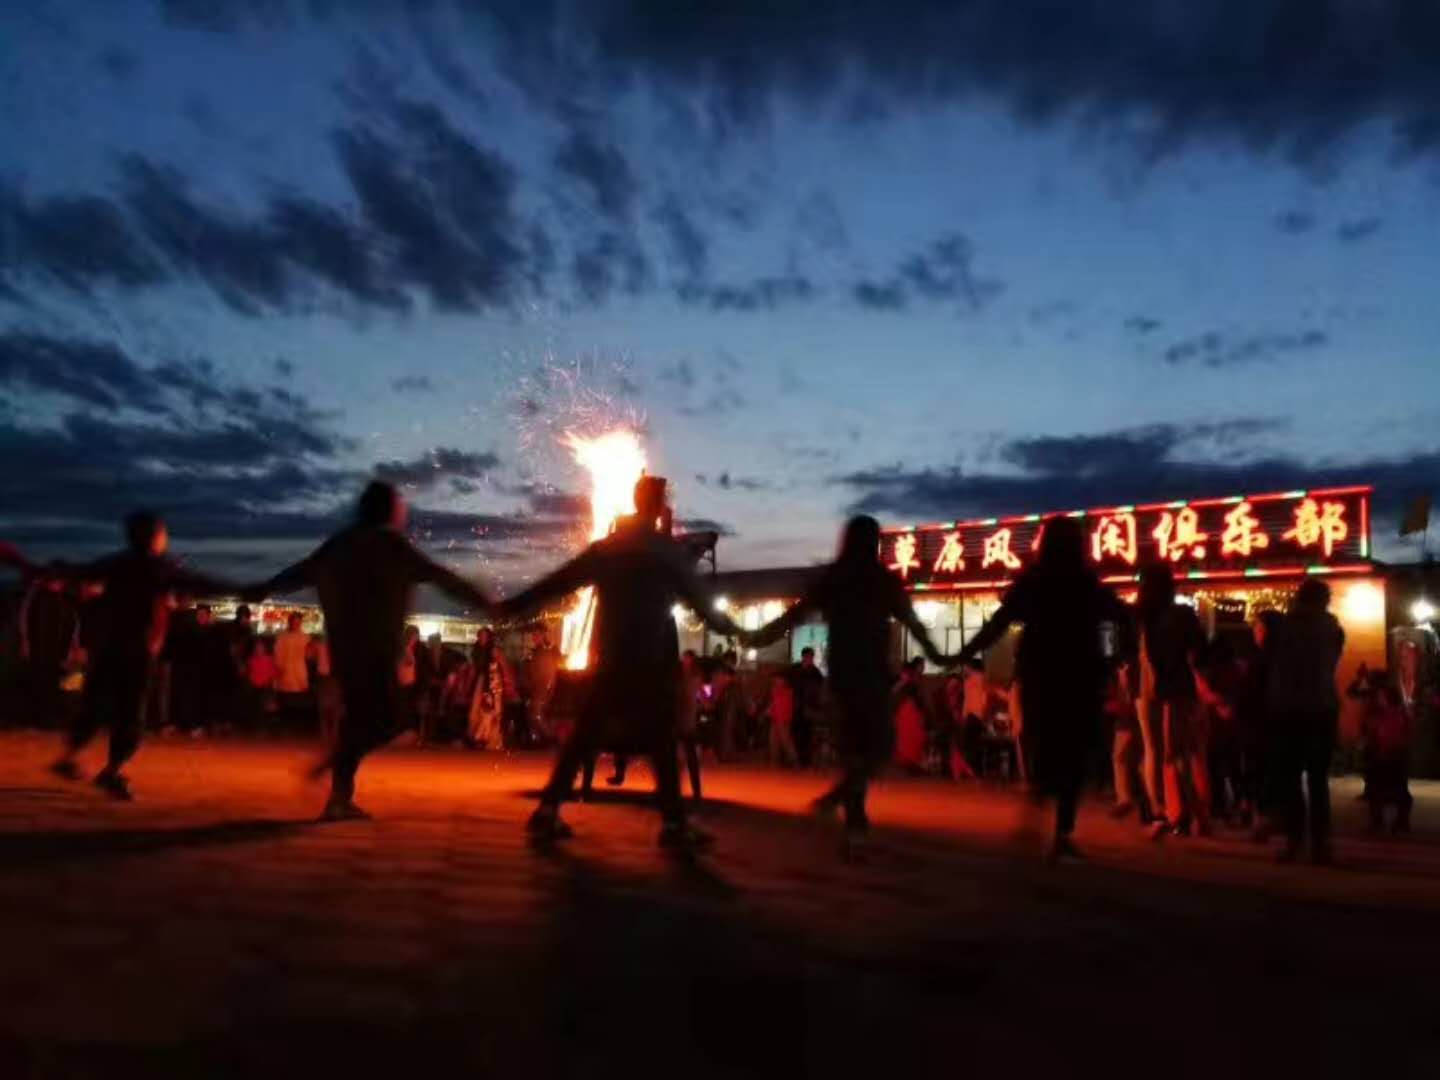 草原篝火晚会,蒙古族歌舞表演